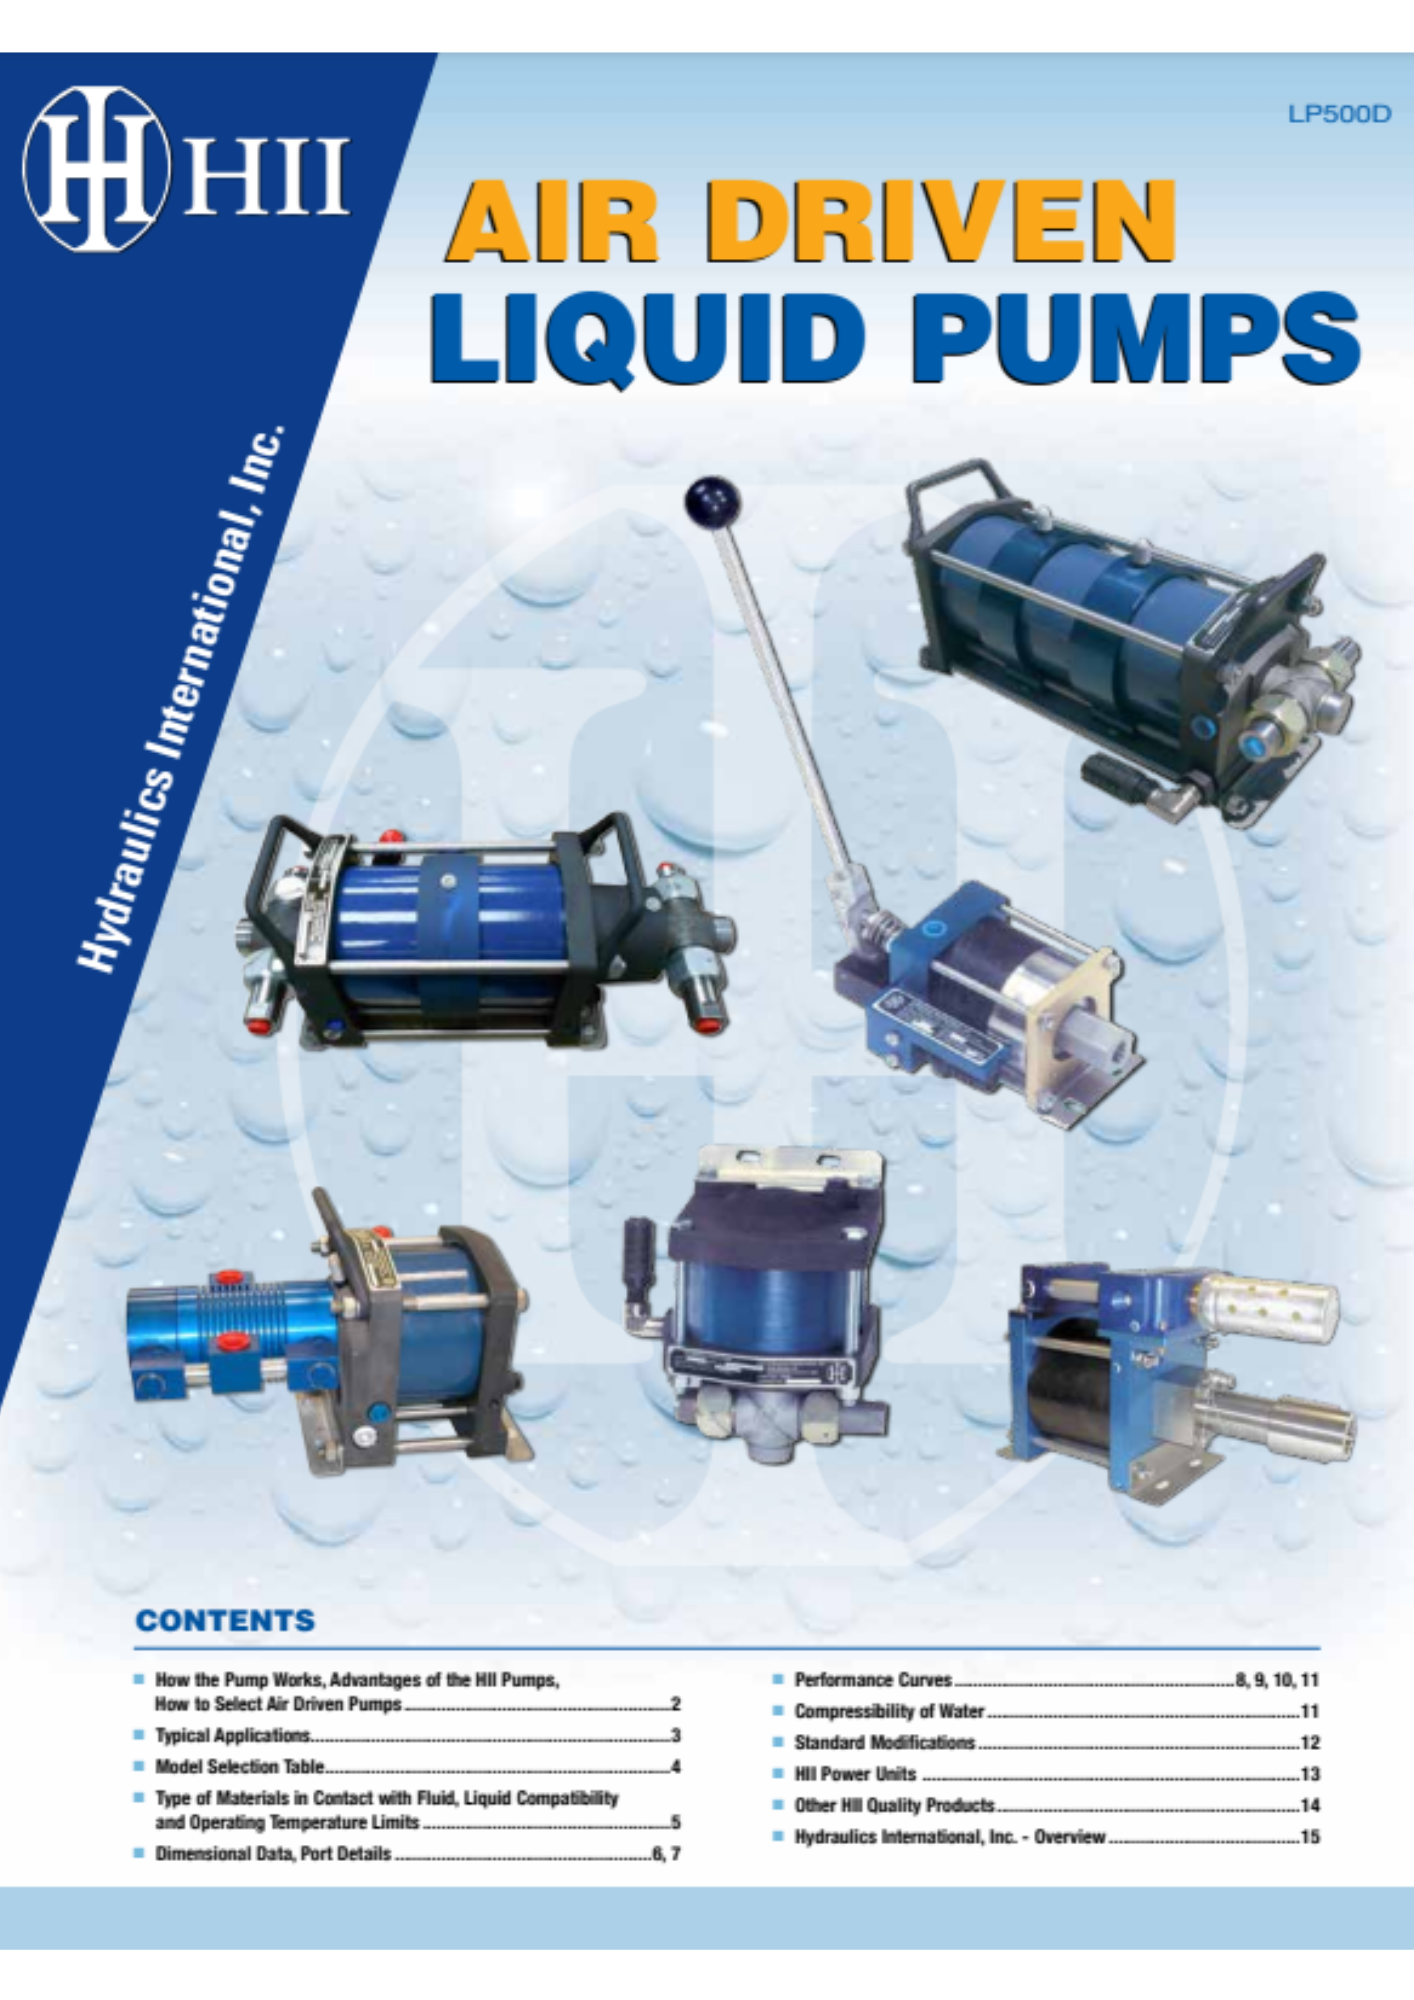 HII: air driven liquid pumps